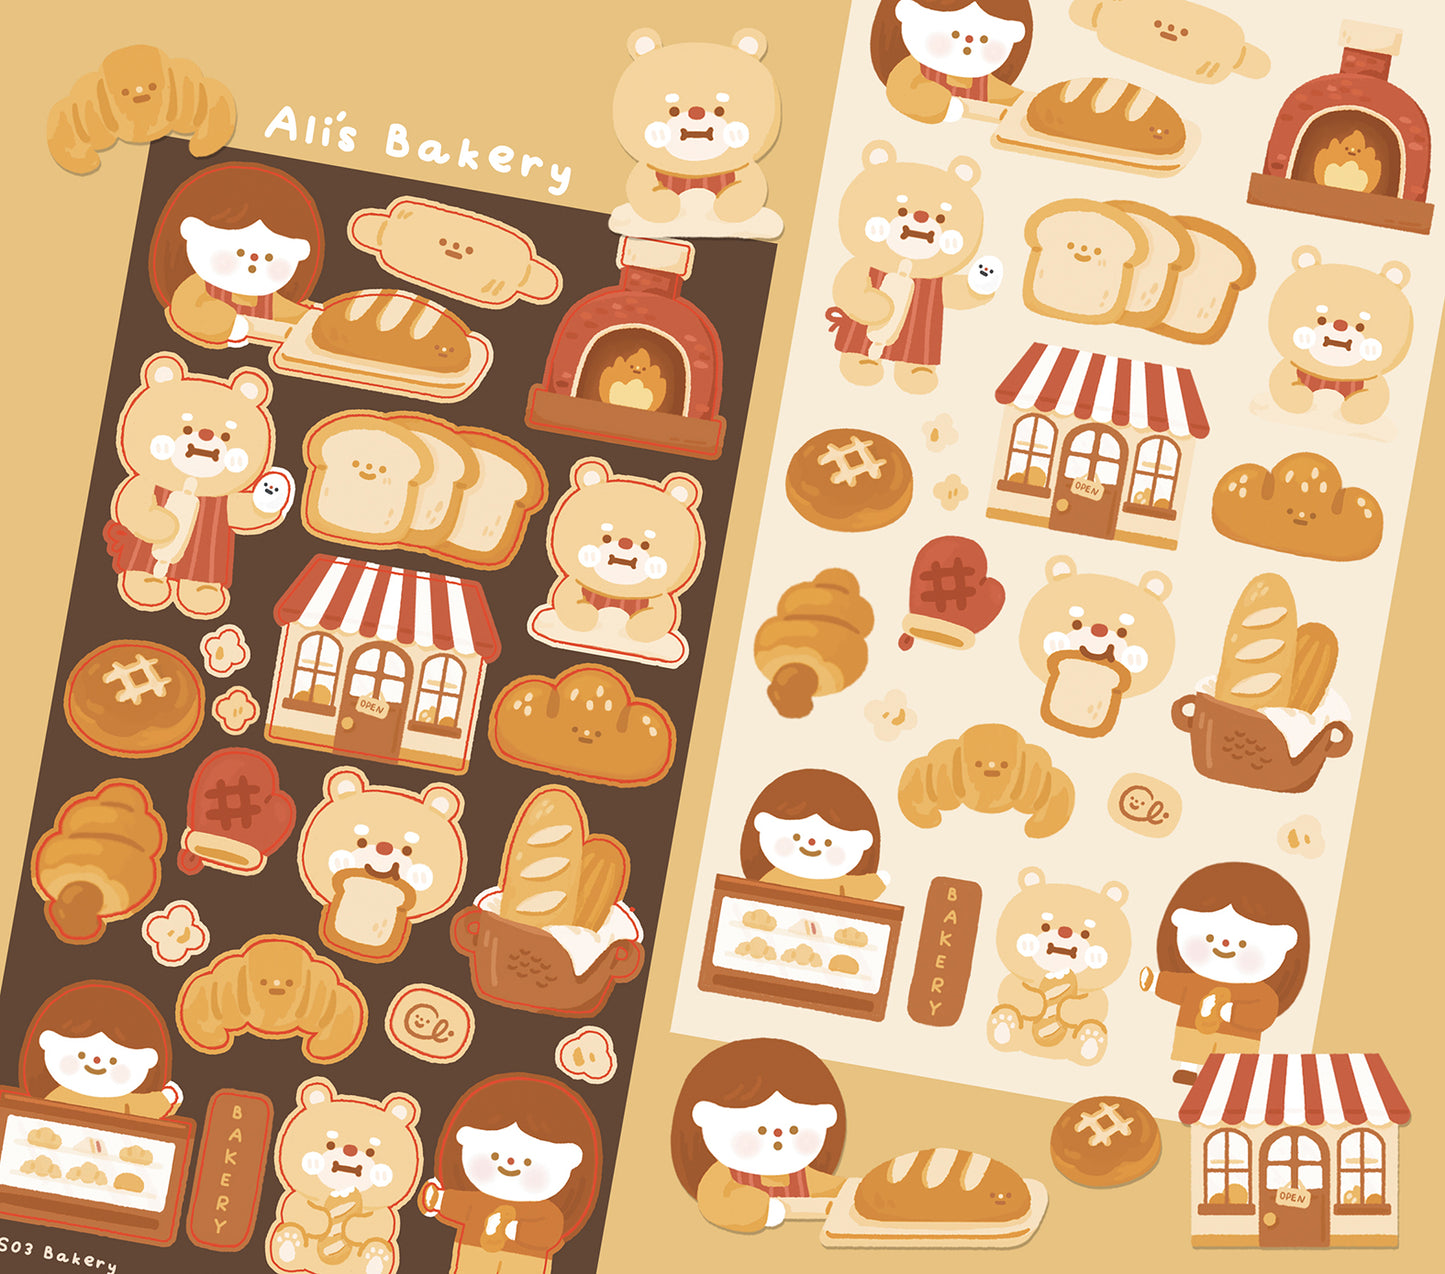 Ali's Bakery Sticker Sheet